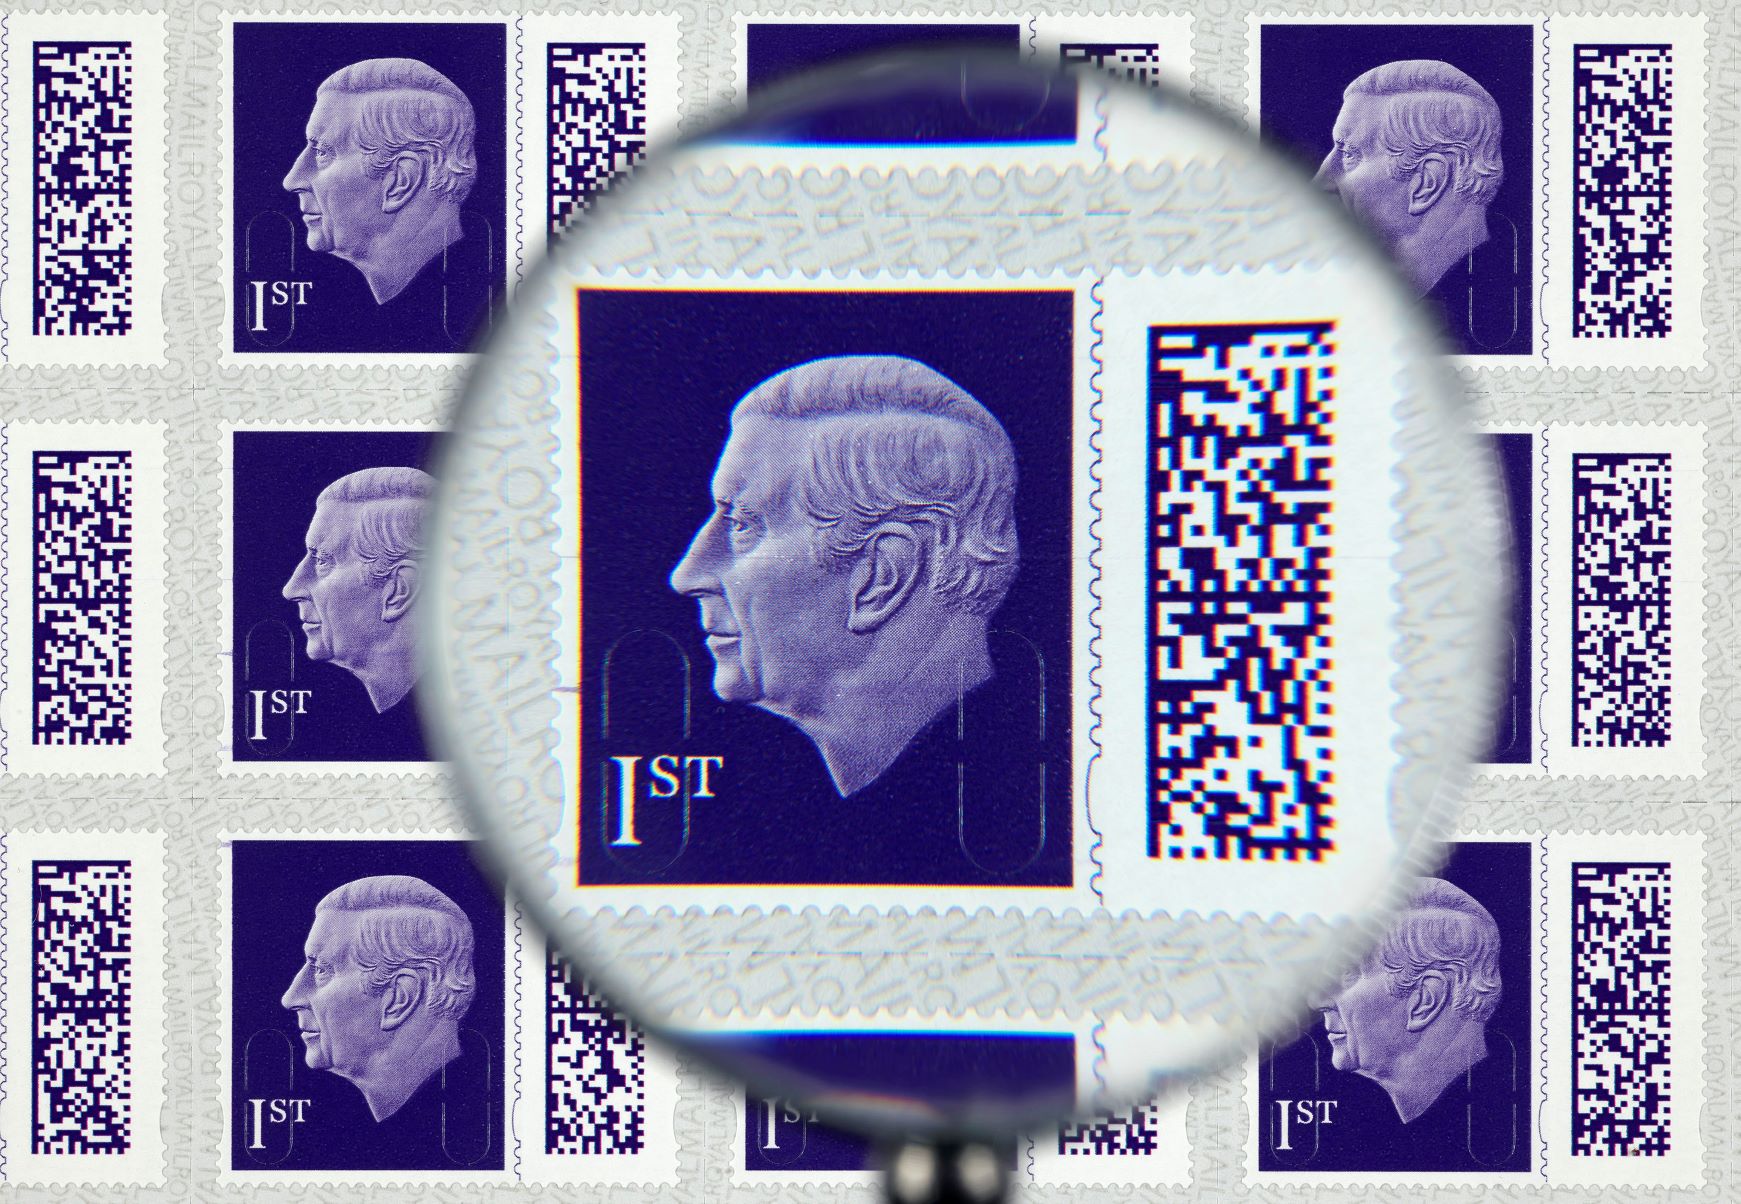 III. Károly koronaékszerek nélküli egyszerű portréja szerepel az új brit postai bélyegeken